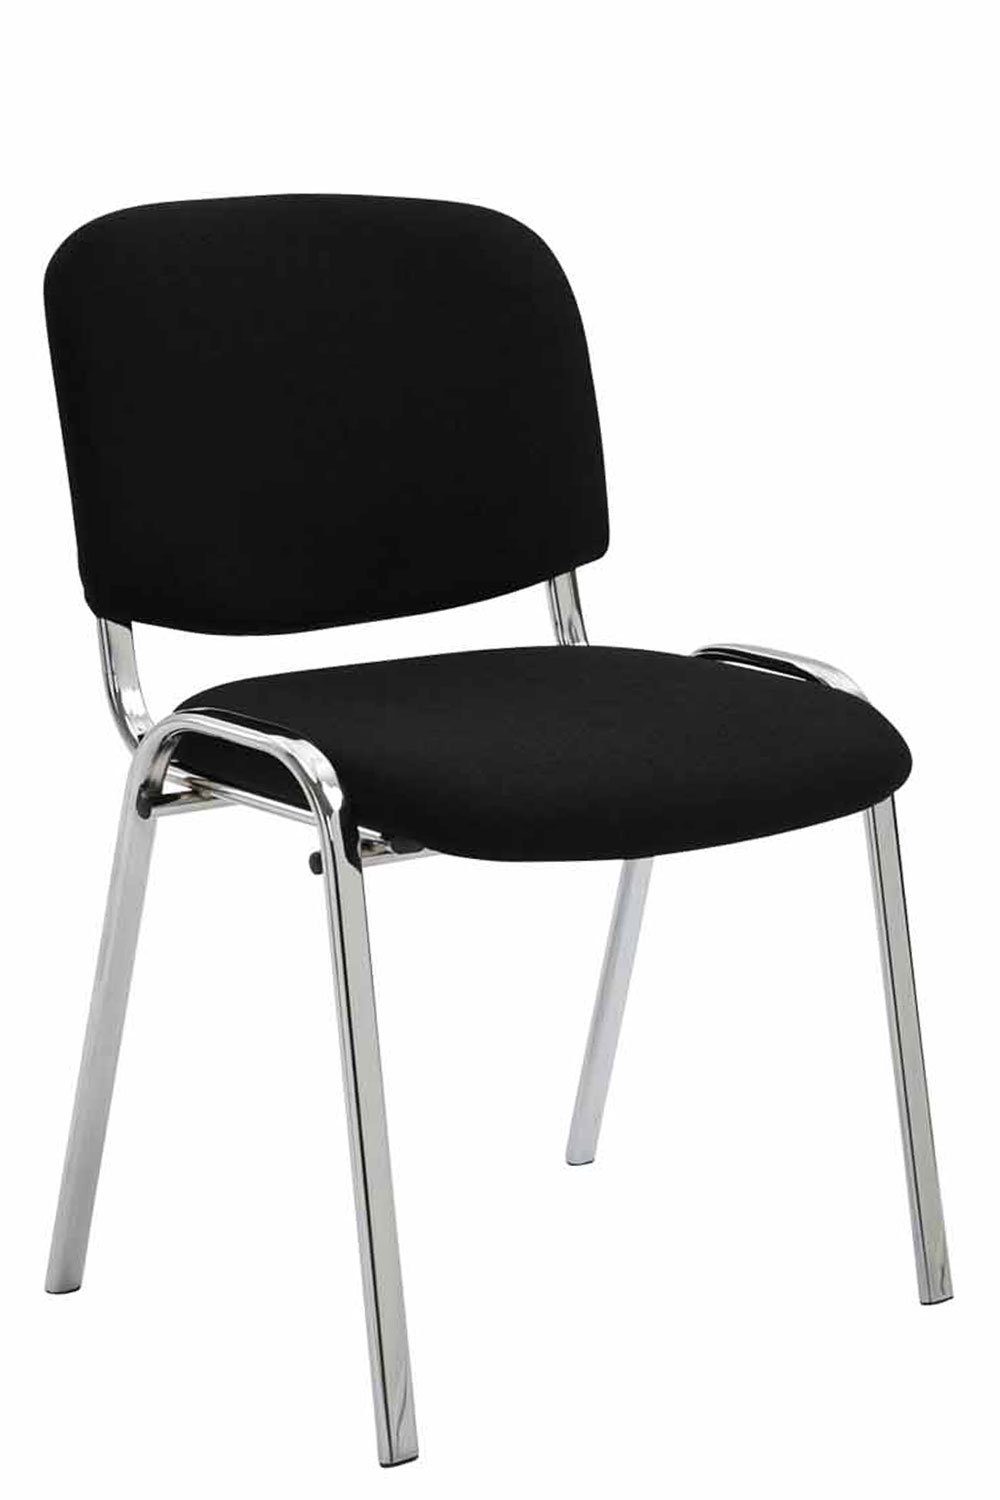 - - schwarz - - Warteraumstuhl (Besprechungsstuhl mit Sitzfläche: TPFLiving hochwertiger Gestell: Besucherstuhl Metall Konferenzstuhl chrom Messestuhl), Keen Polsterung Stoff